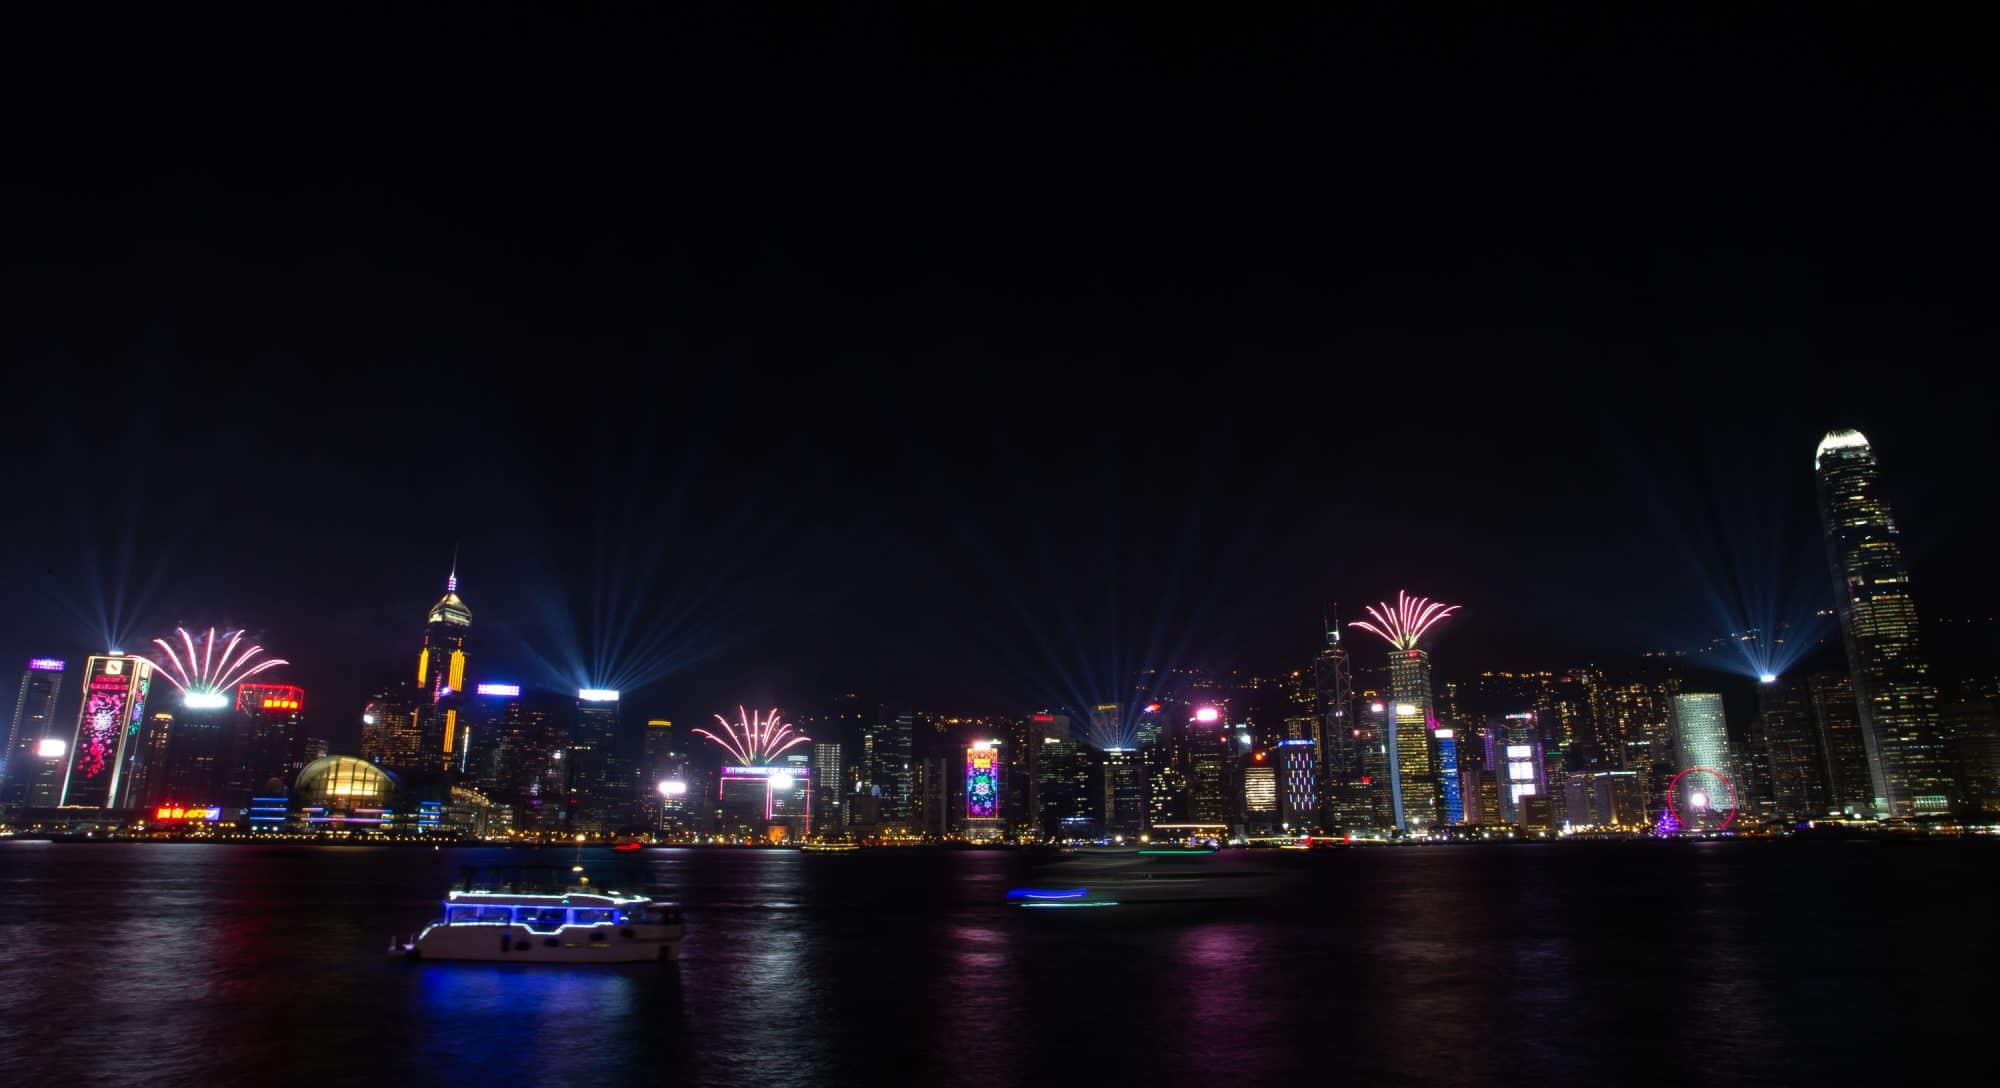 ฮ่องกงต้อนรับปี 2020 ด้วยโชว์แสงสีระดับโลกเหนืออ่าววิคตอเรีย จัดกิจกรรมจับฉลากปีใหม่ทั่วเมืองครั้งแรก 3